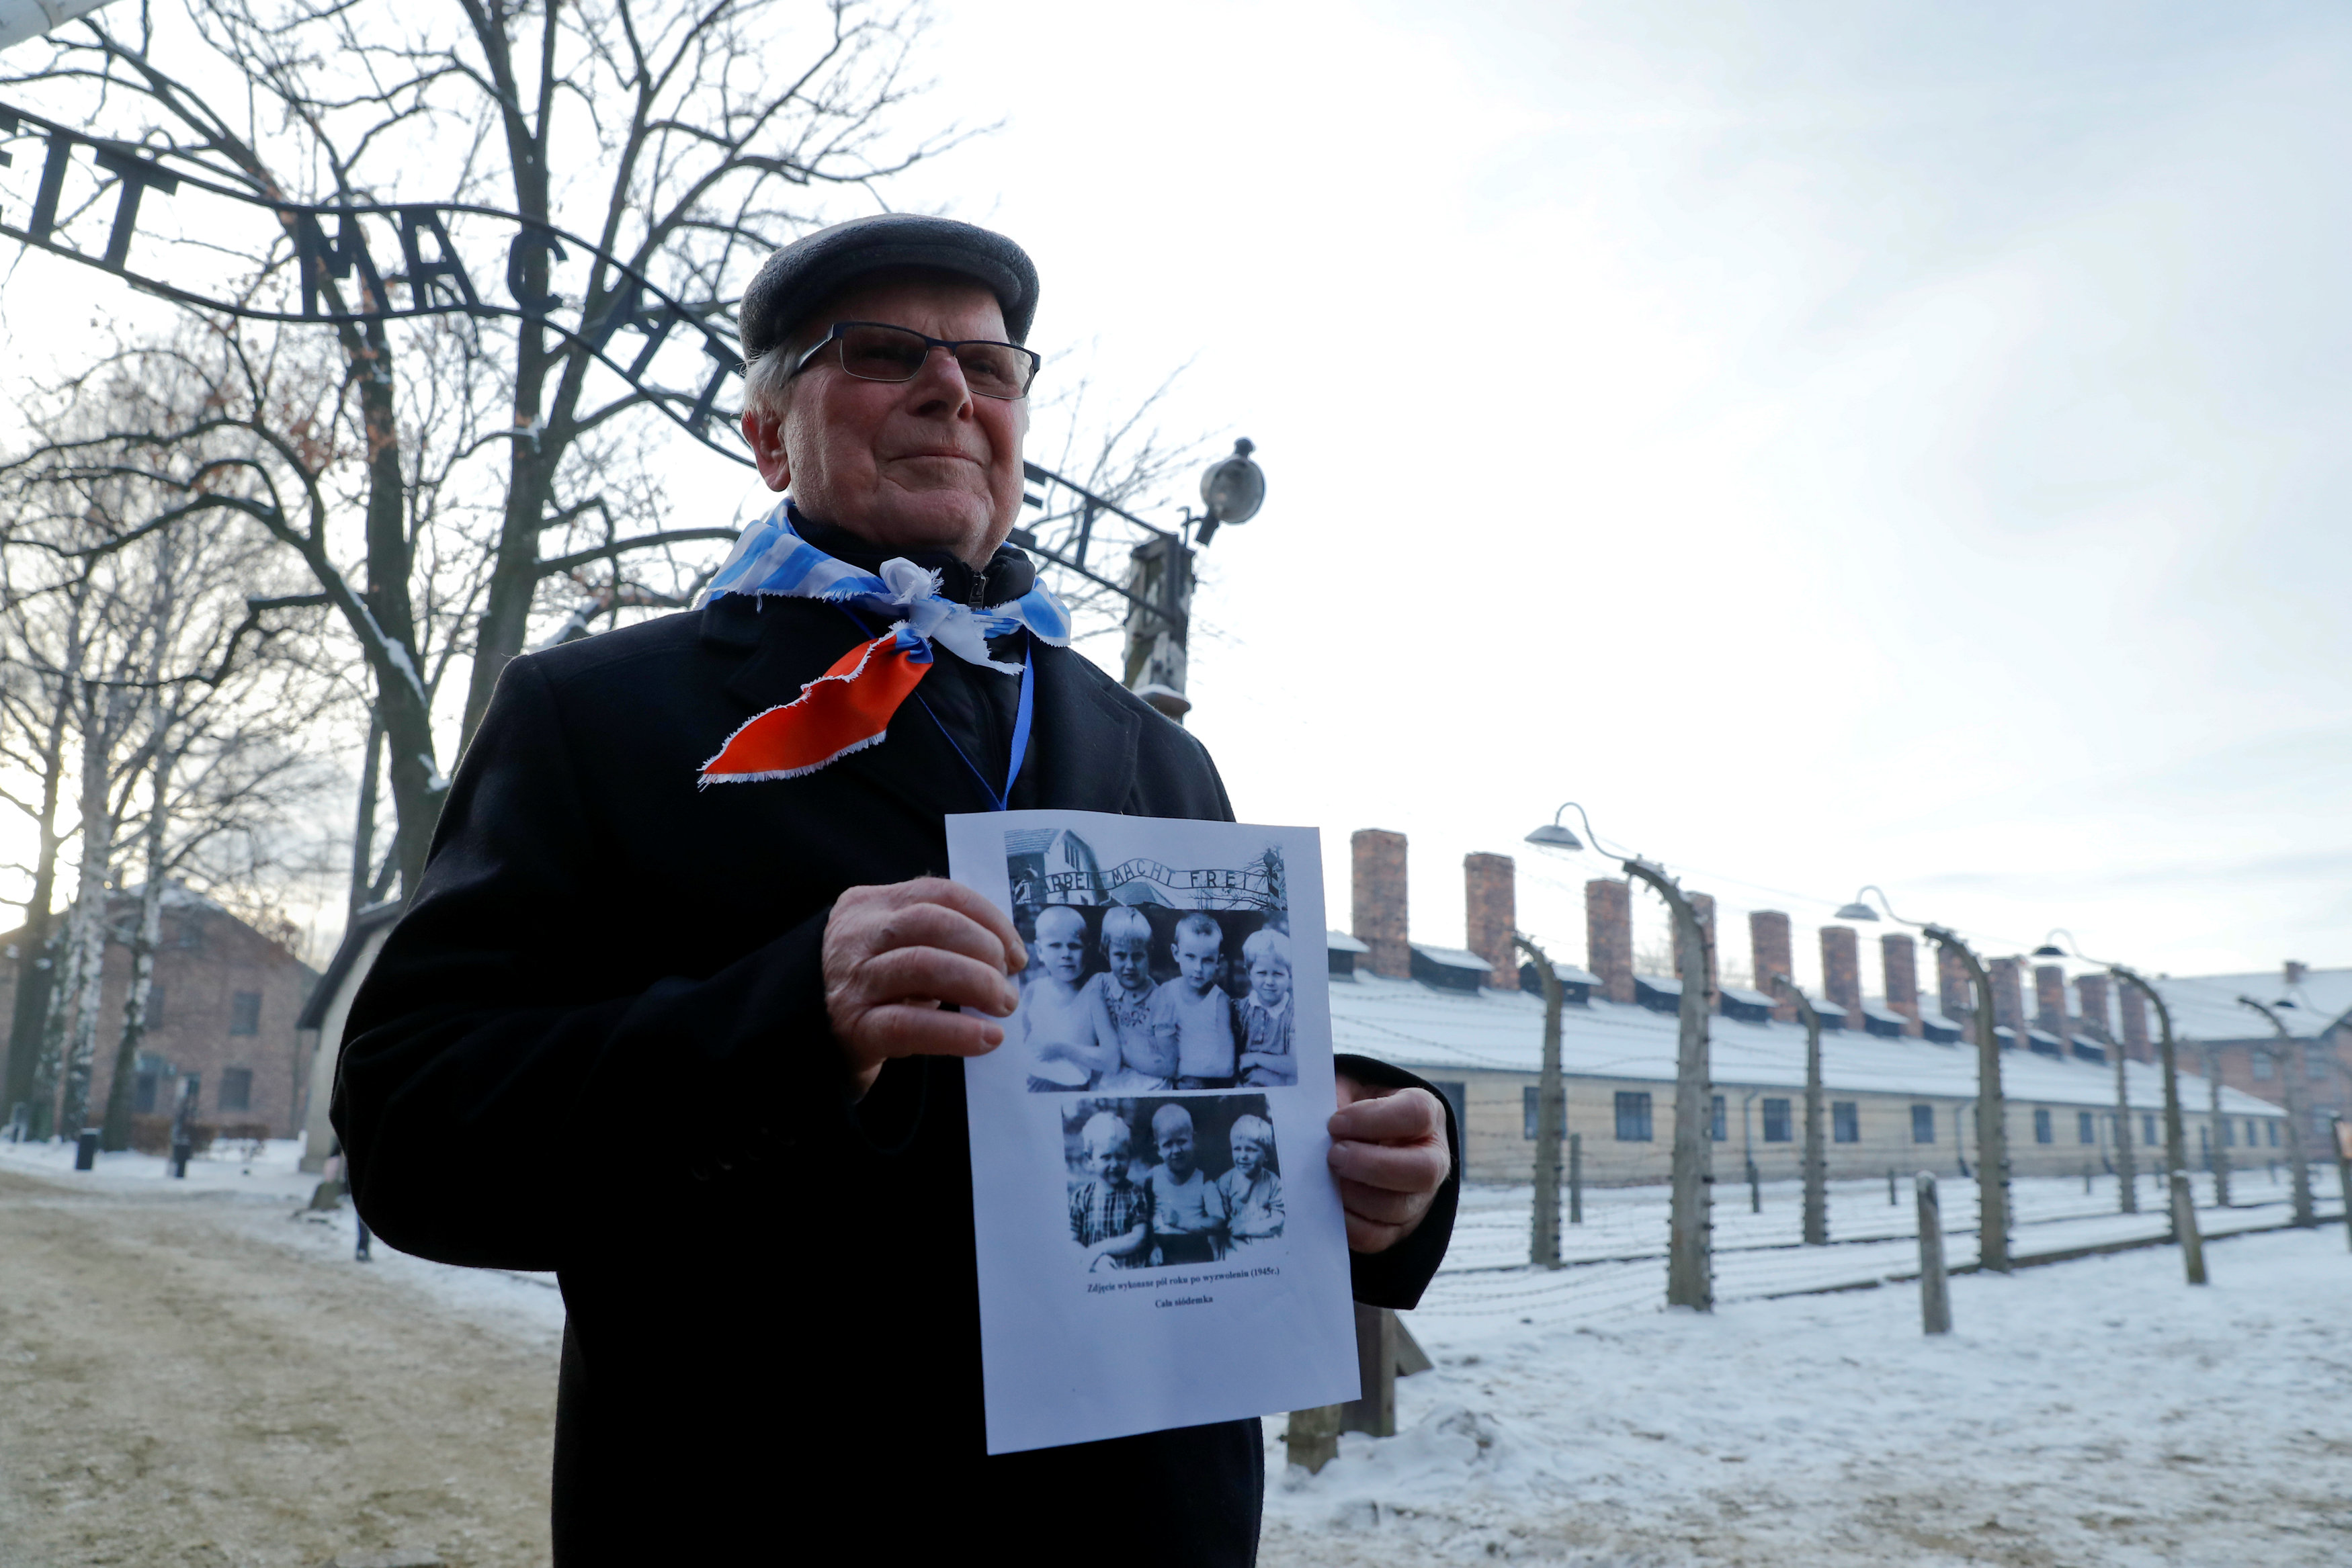 أحد الناجين يحمل صورا لعدد من ضحايا المعتقل